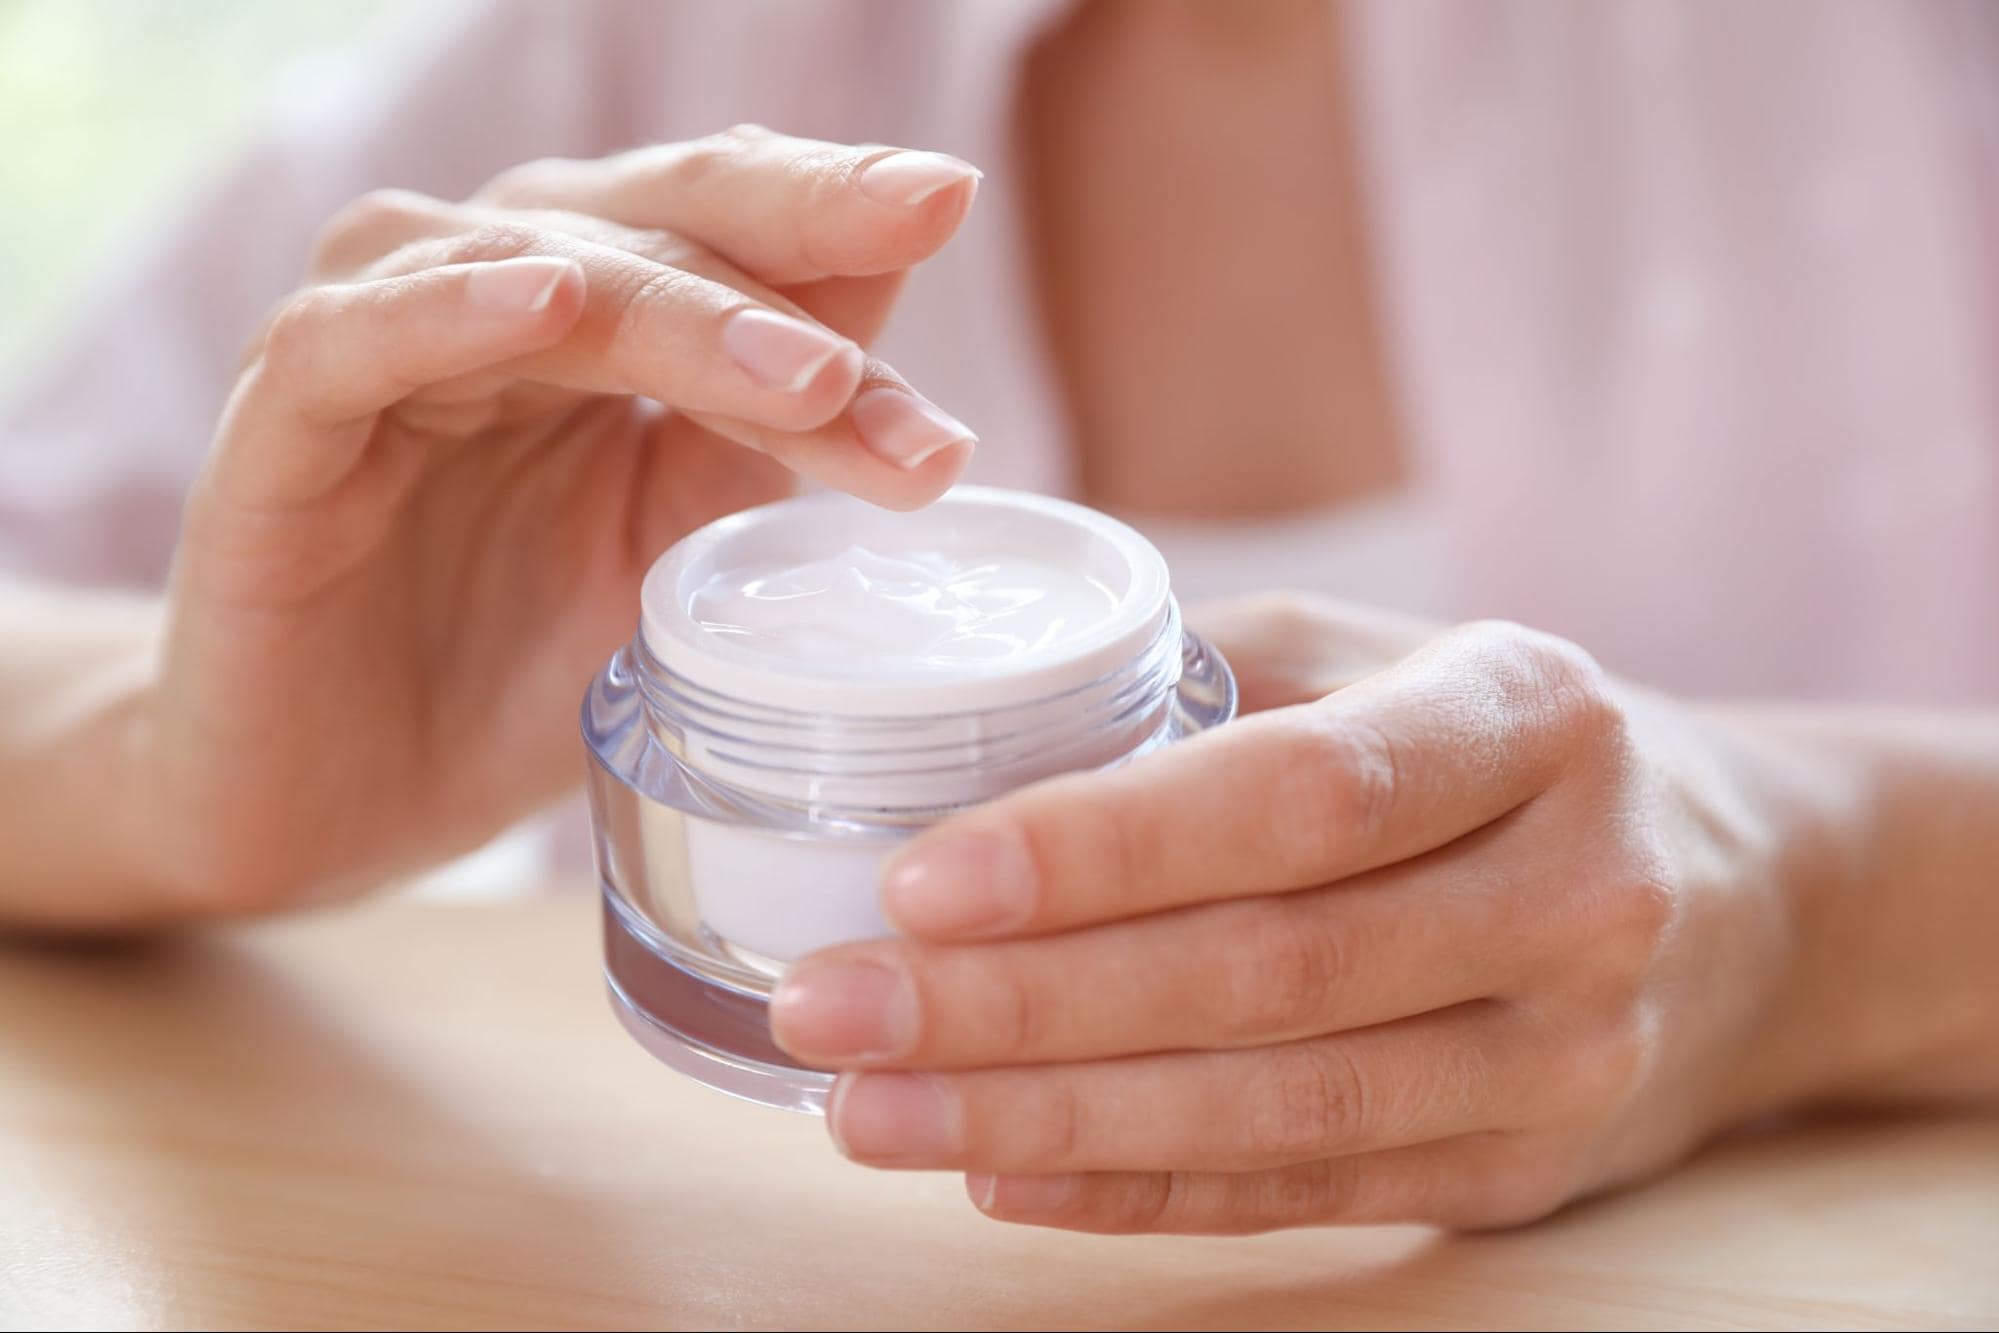 a woman using a facial cream in a glass jar.